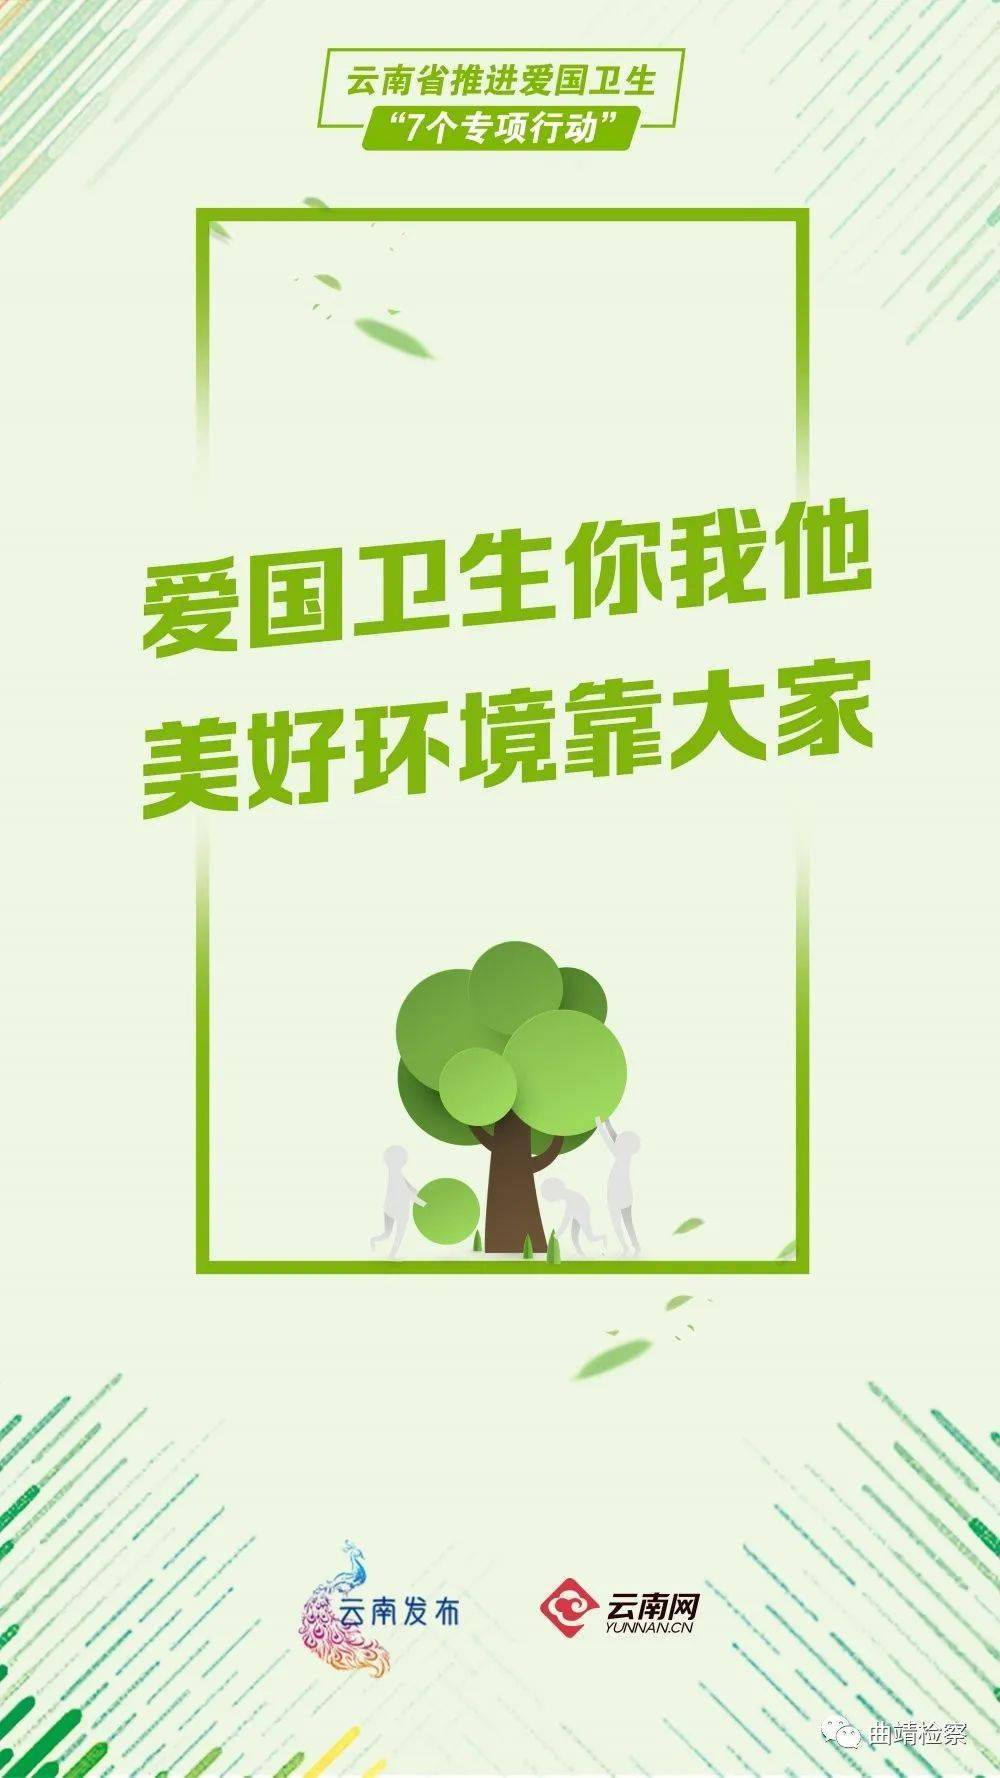 云南省最新爱国卫生专项行动宣传海报来啦!_手机搜狐网